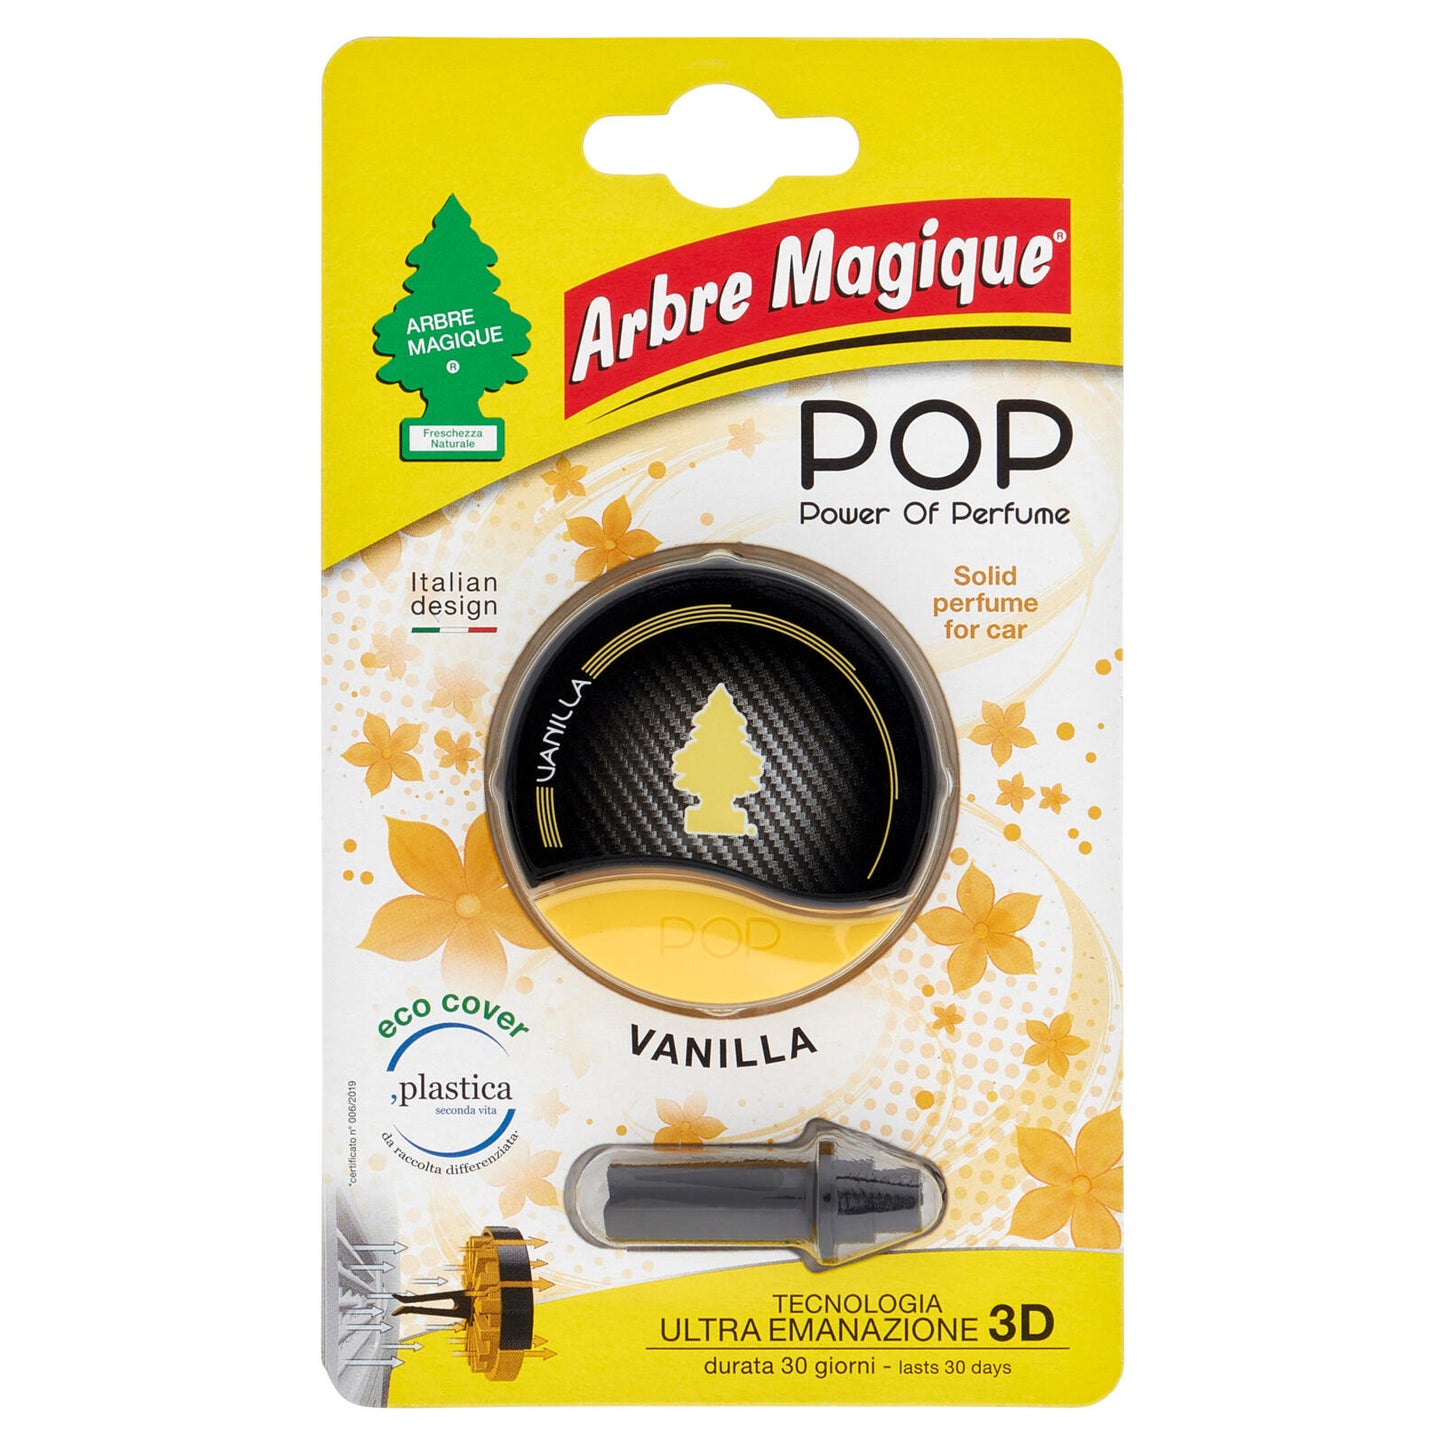 Arbre Magique Pop Power of Perfume Vanilla 9,5 g